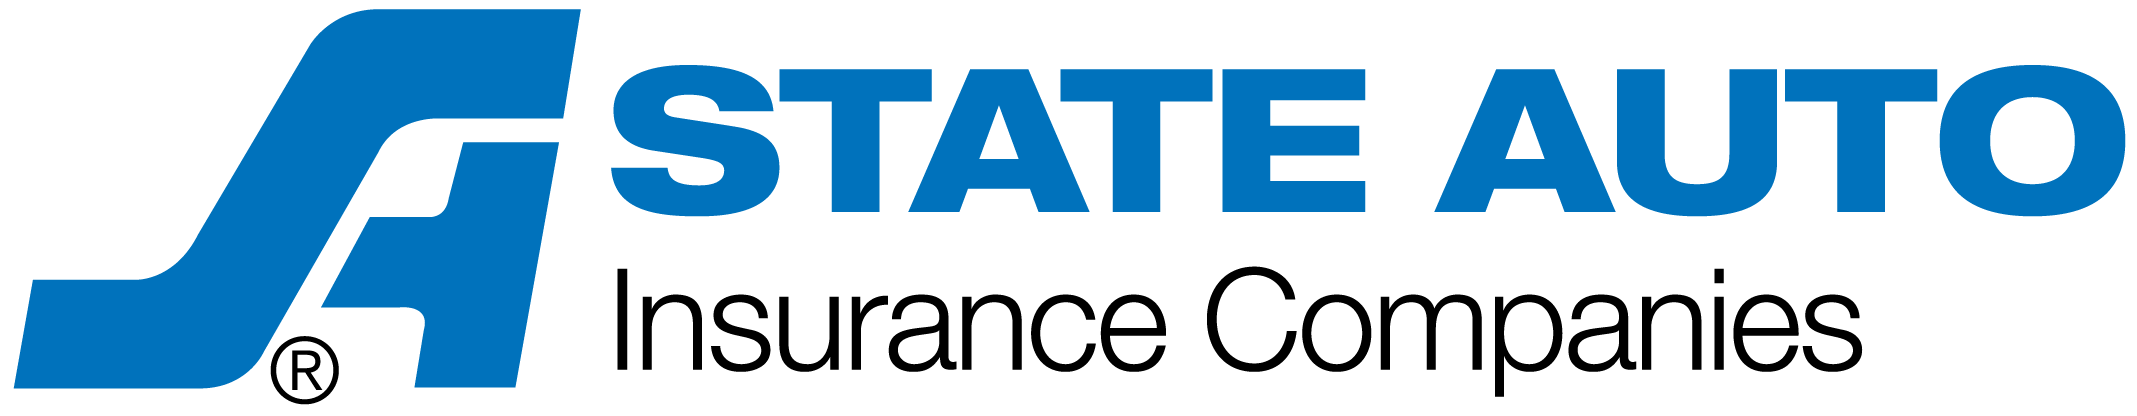 state-auto-logo